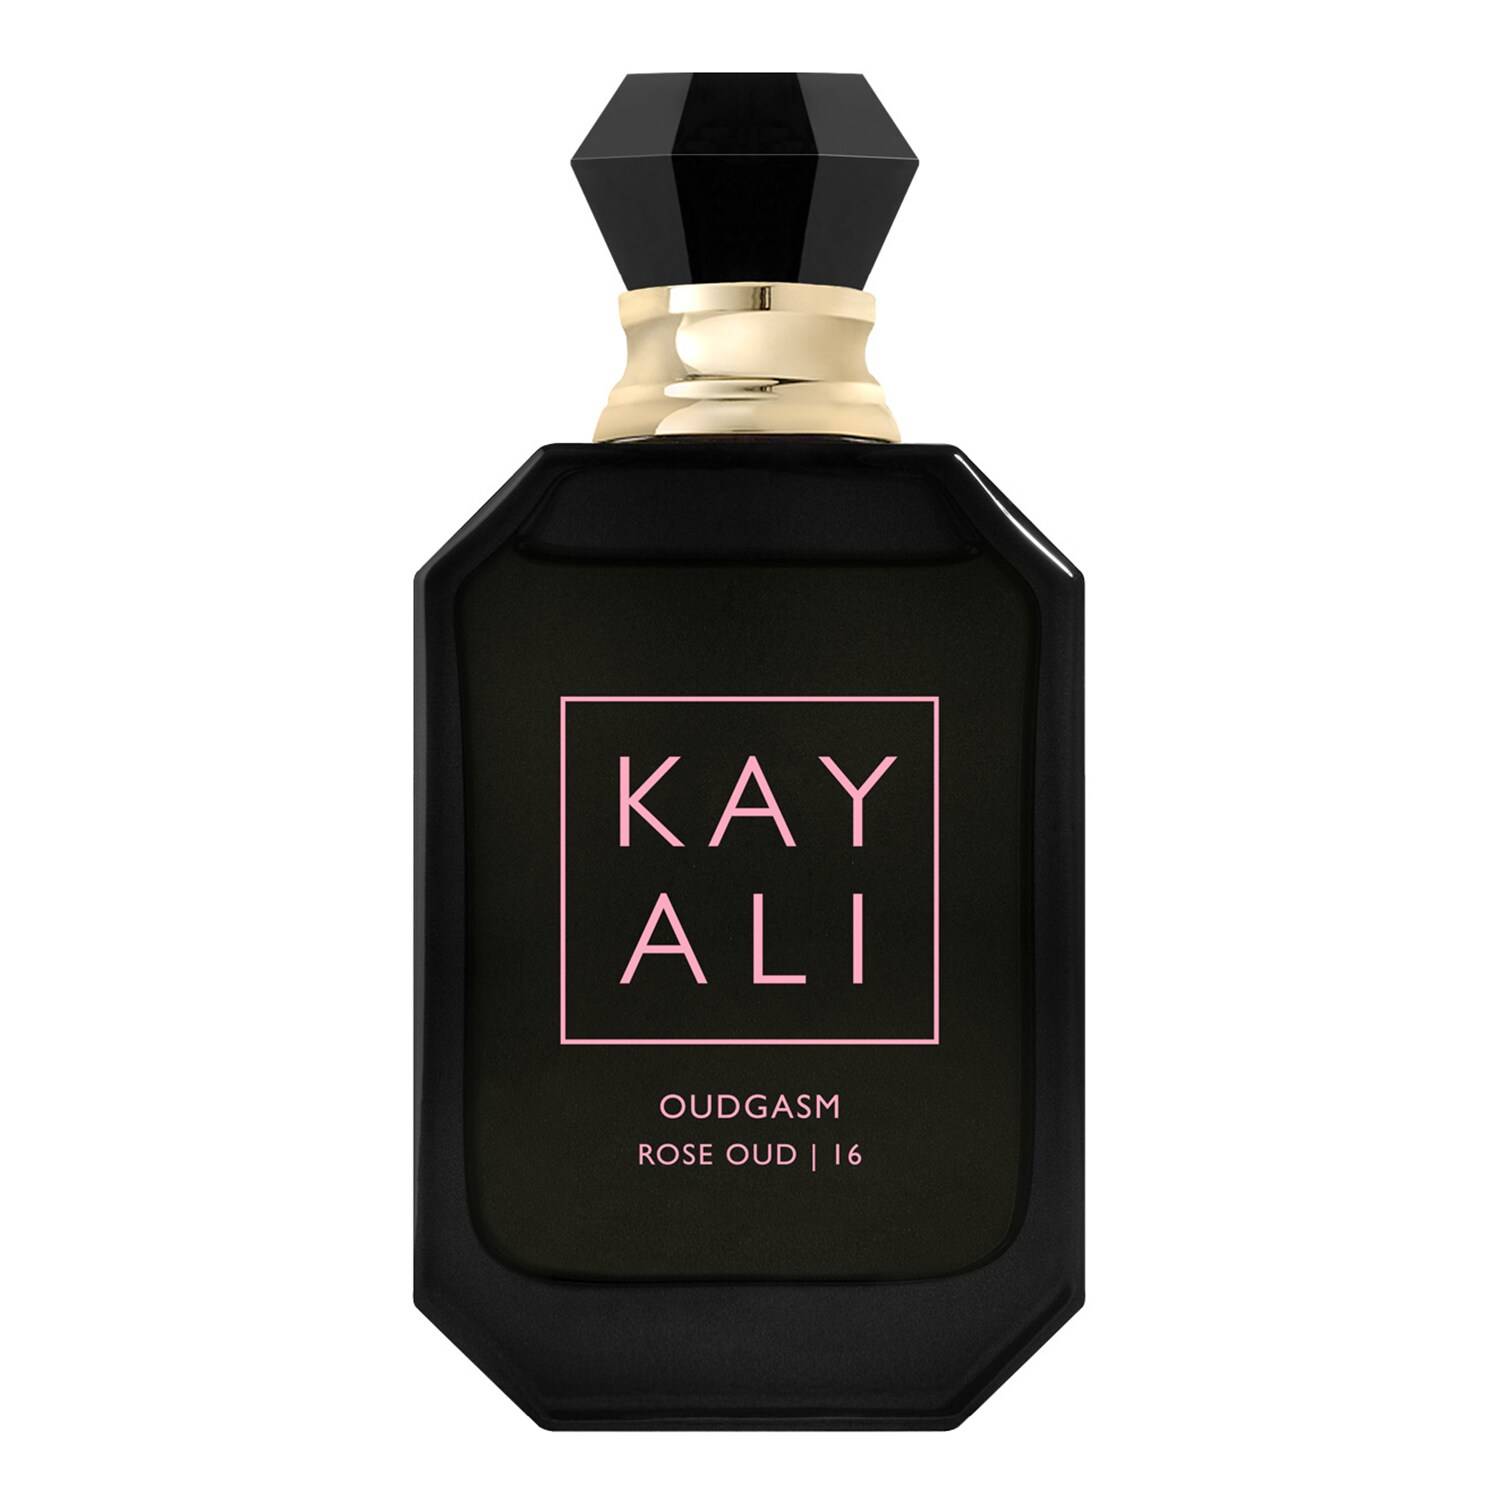 Kayali Oudgasm Rose Oud - 16 Eau De Parfum Intense 50Ml